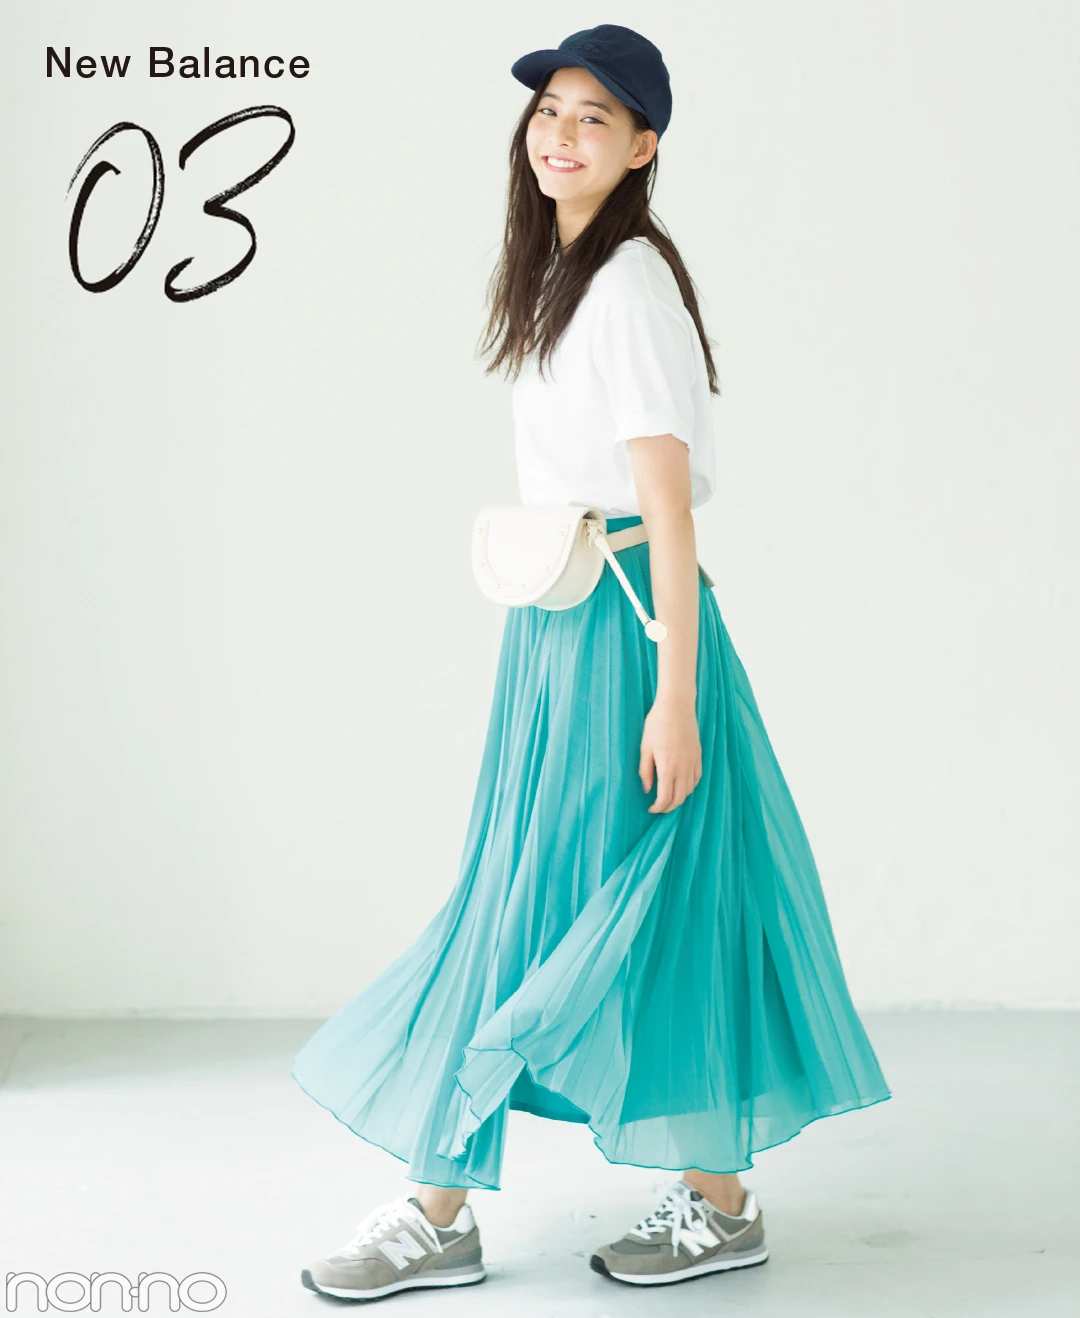 【夏のスニーカーコーデ】新木優子は、パステルスカートの甘さを程よく引き算してこなれコーデ。